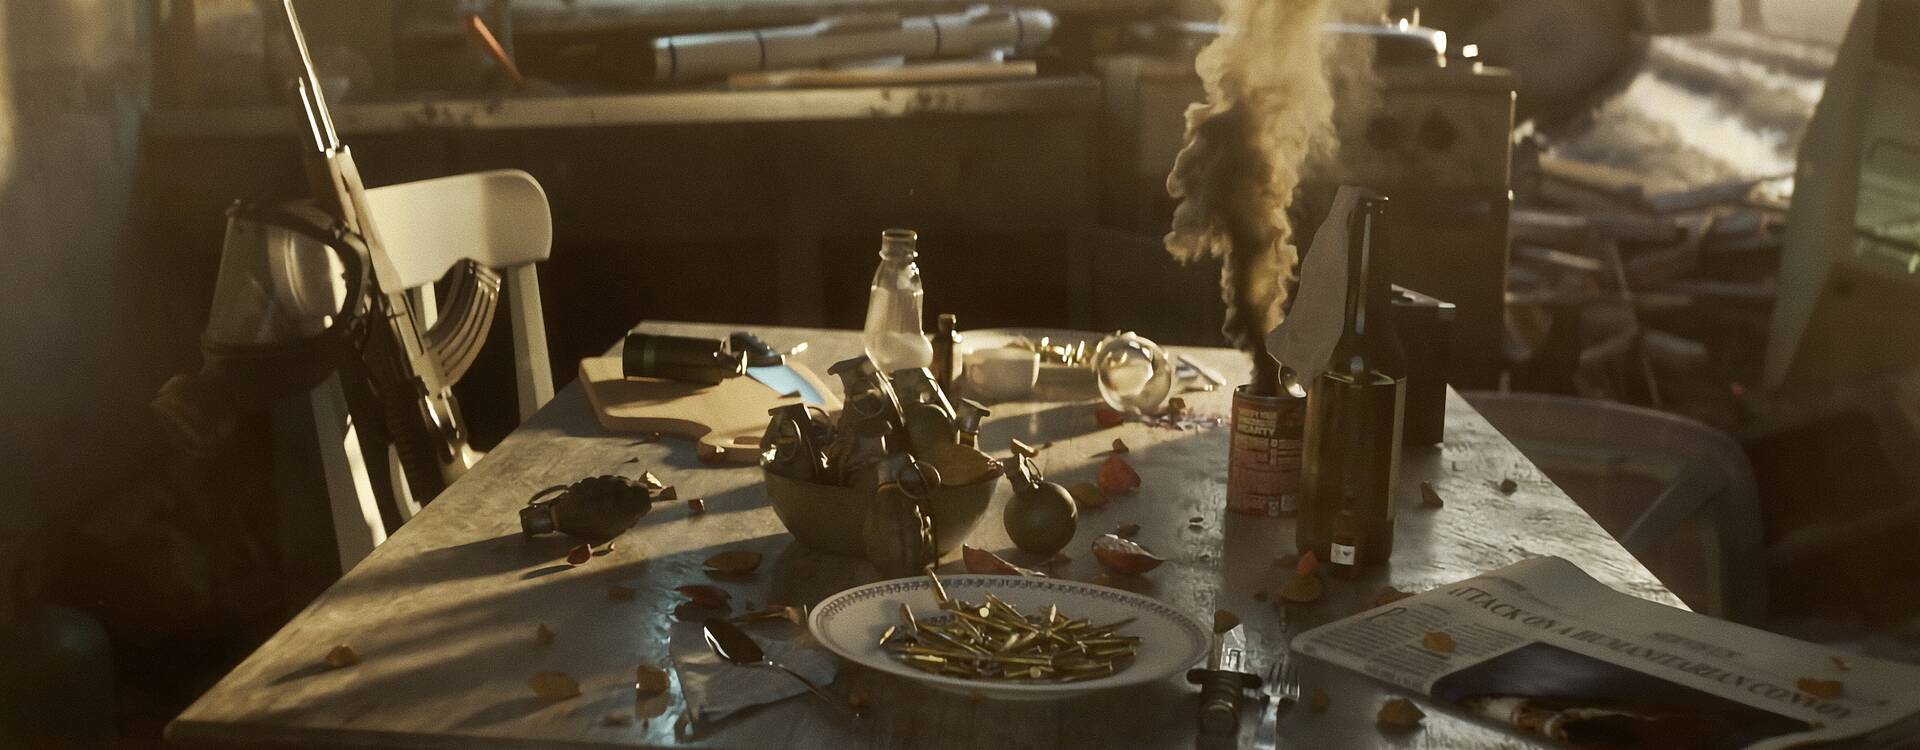 Ein Tisch mit Kugeln, Granaten und Rauchbomben sowie einer Zeitung mit Kriegs-Schlagzeile, auf einem Stuhl eine Waffe, im Hintergrund ein zerstörtes Zimmer.